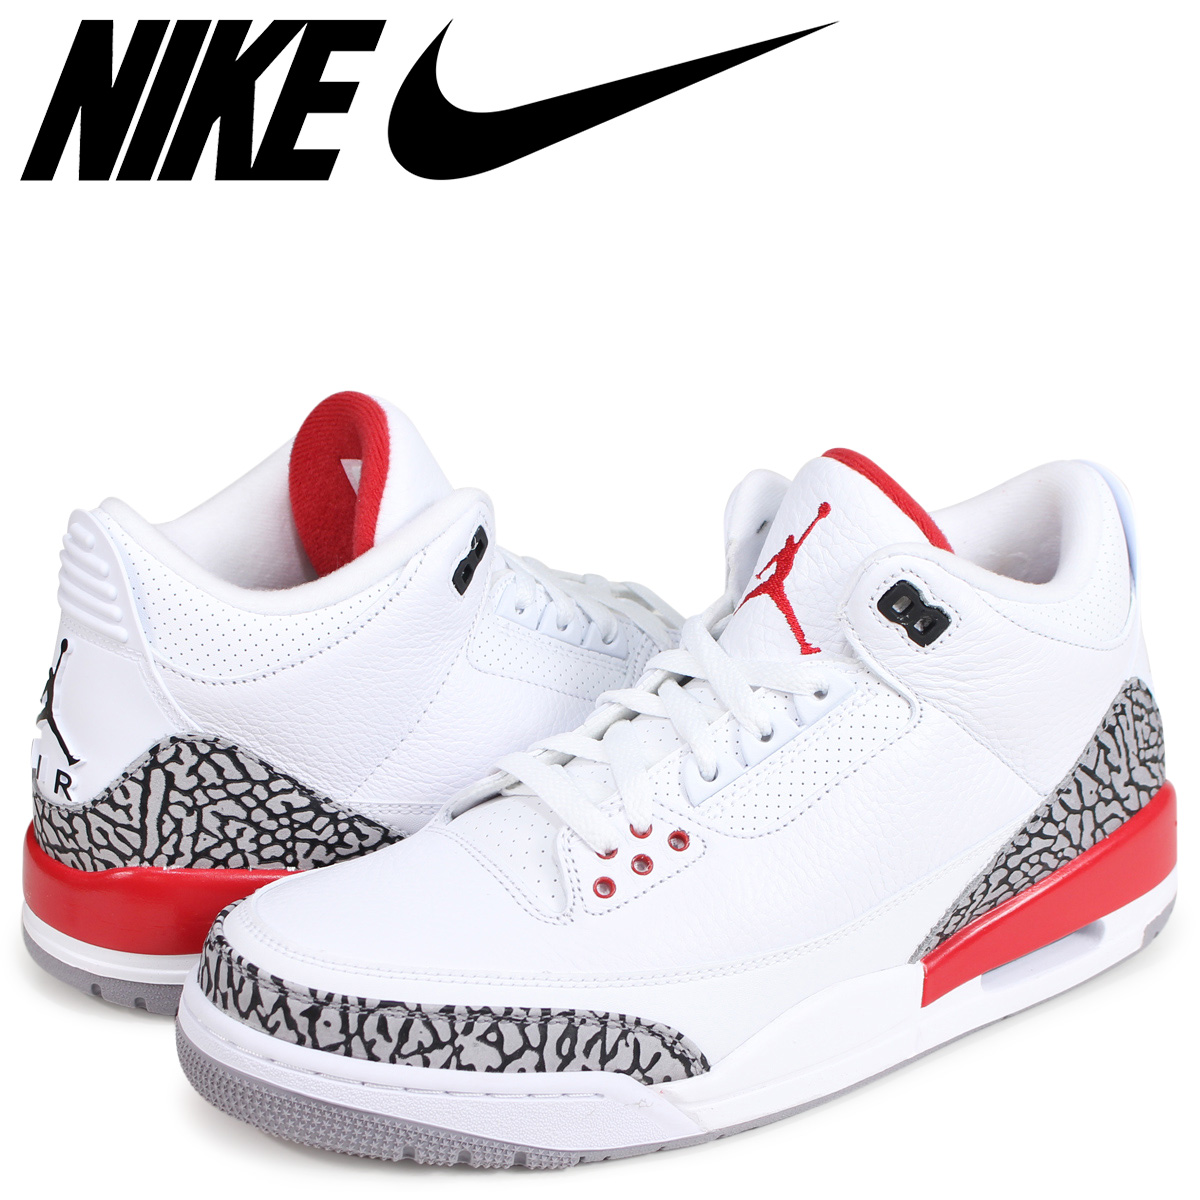 Nike Air Jordan 3 prijs